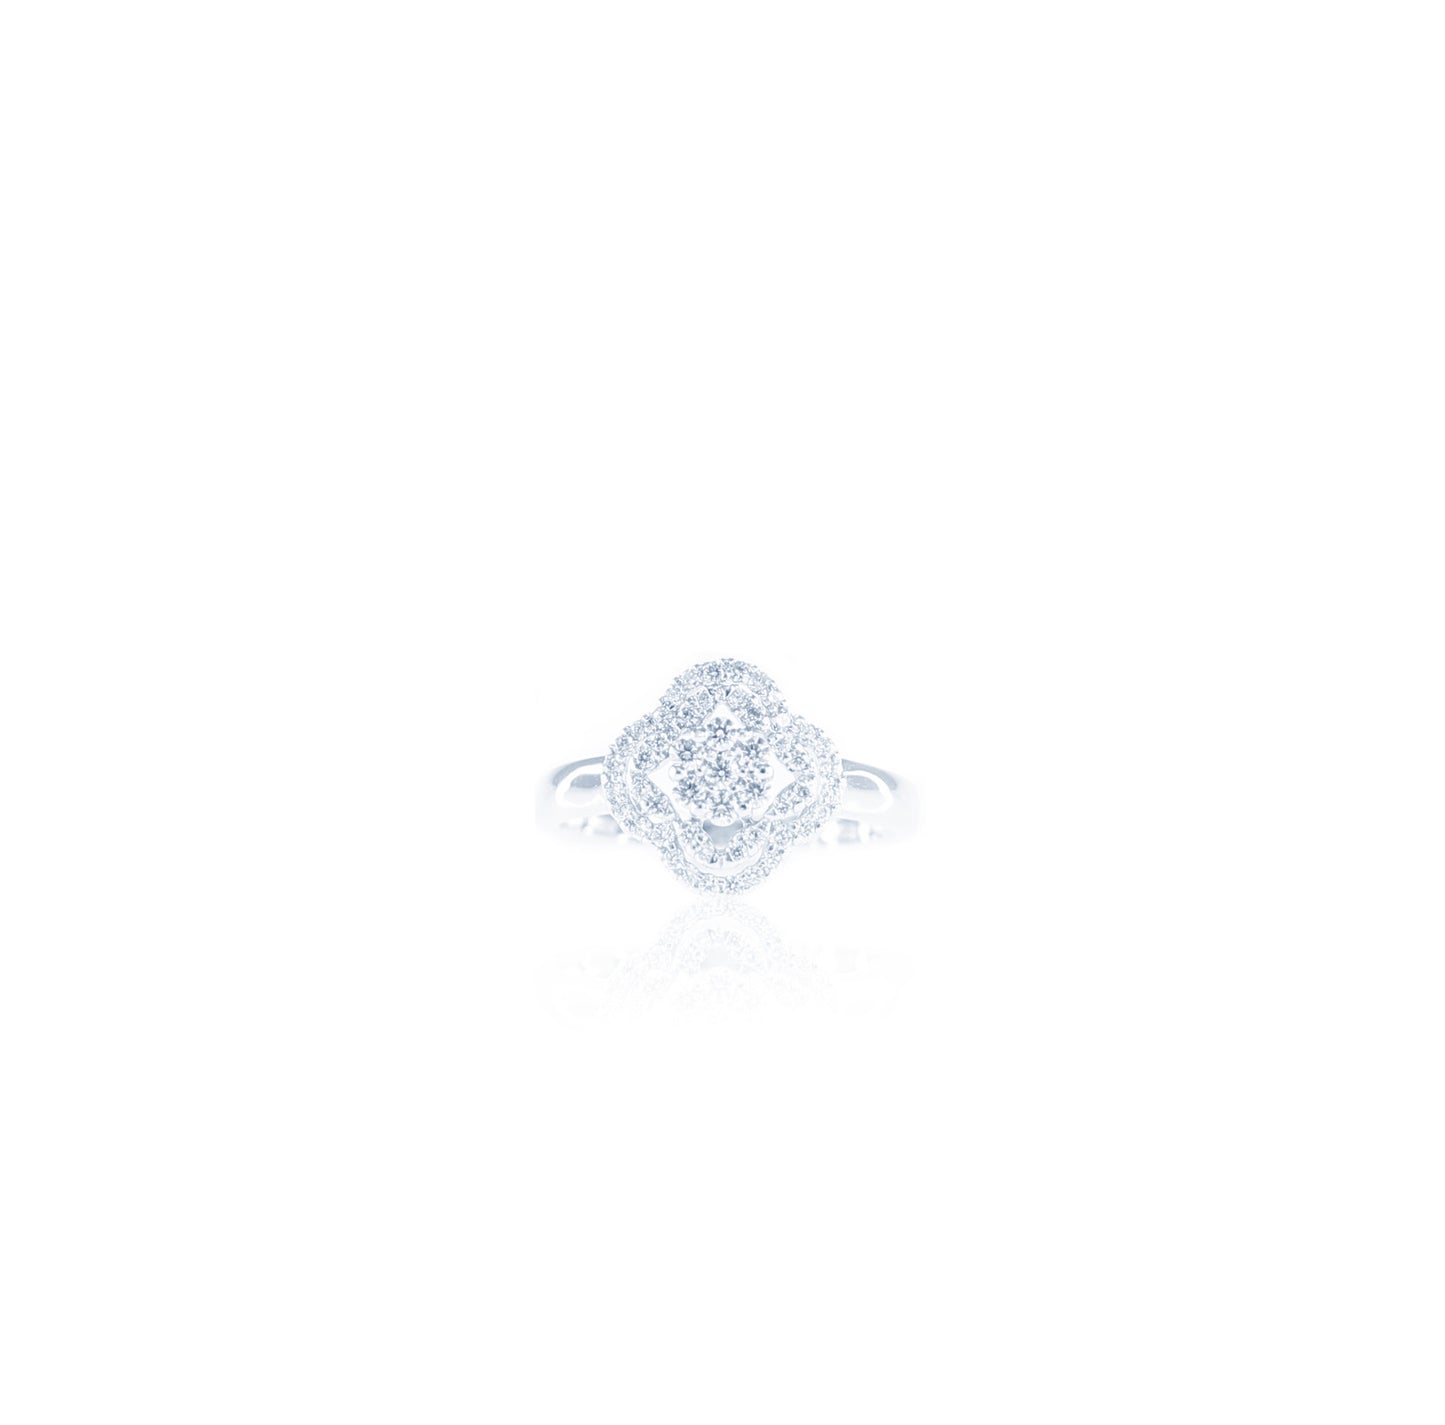 Elegant and Magical Flower Diamond Ring in 18K White Gold